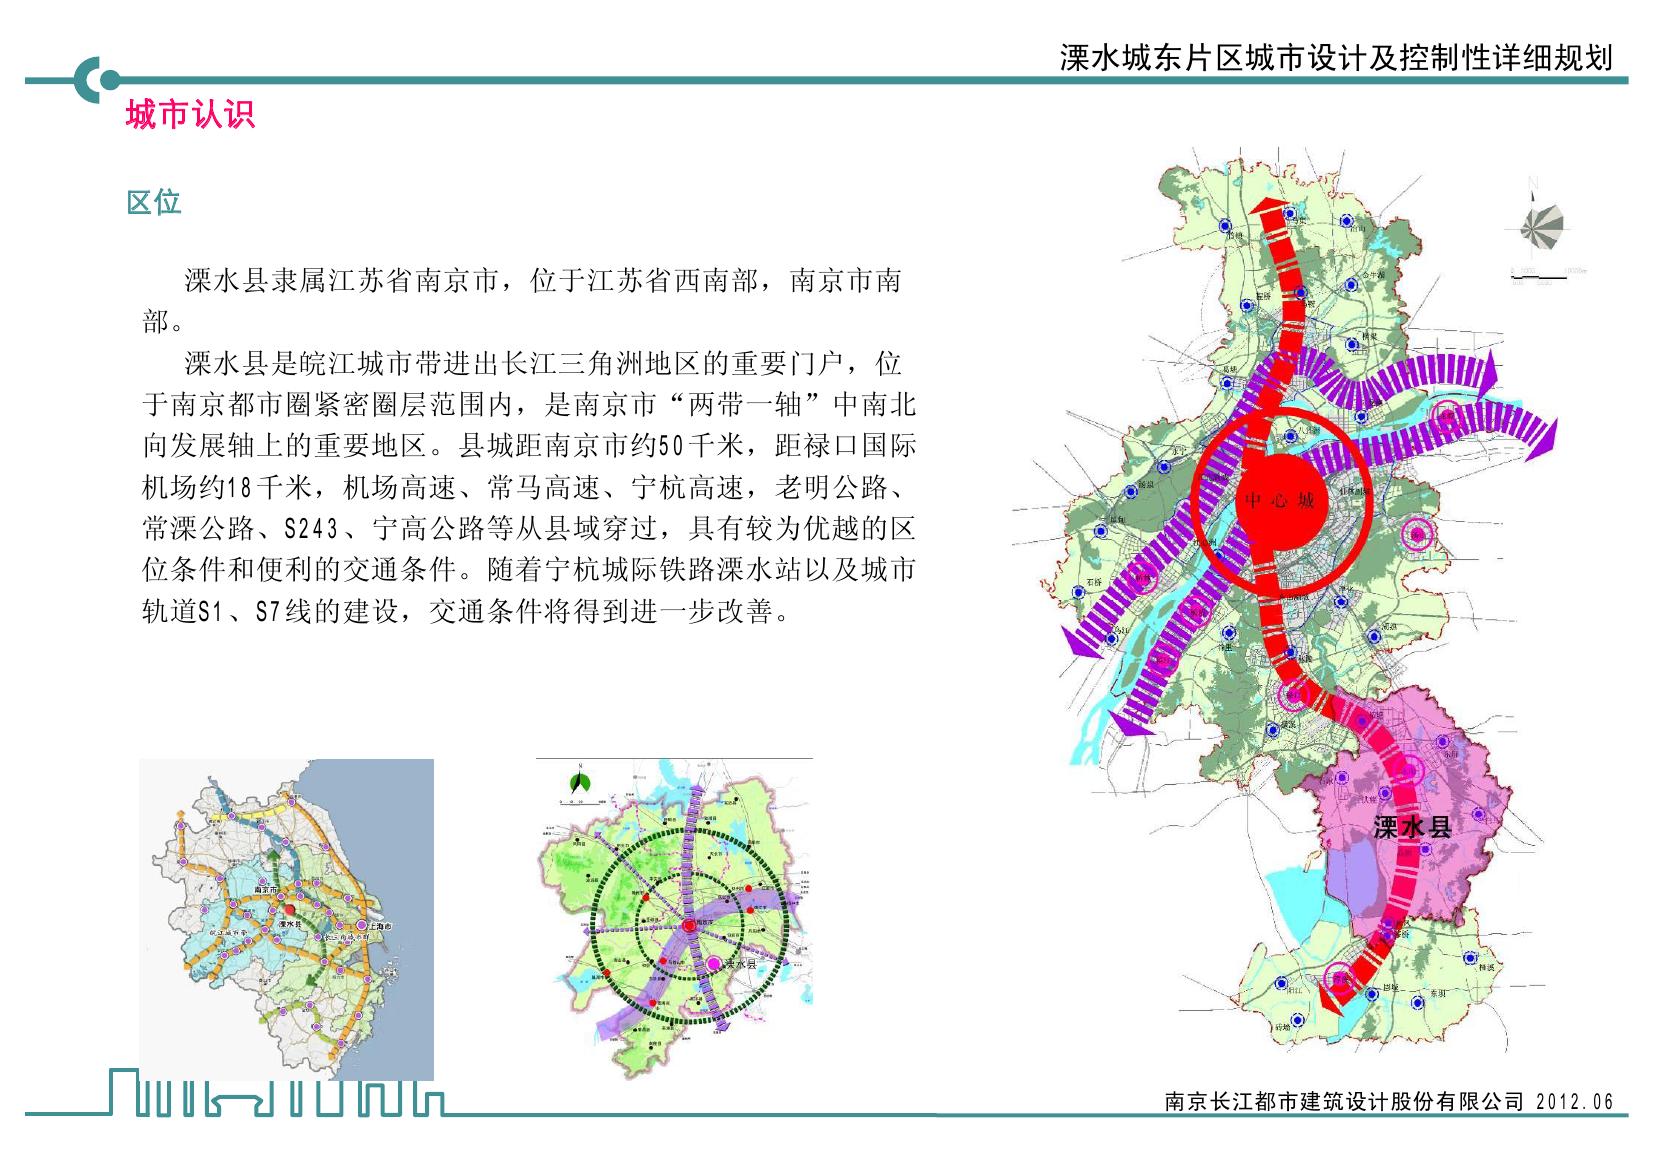 【江苏】生态山水休闲城市旅游片区景观详细规划设计方案